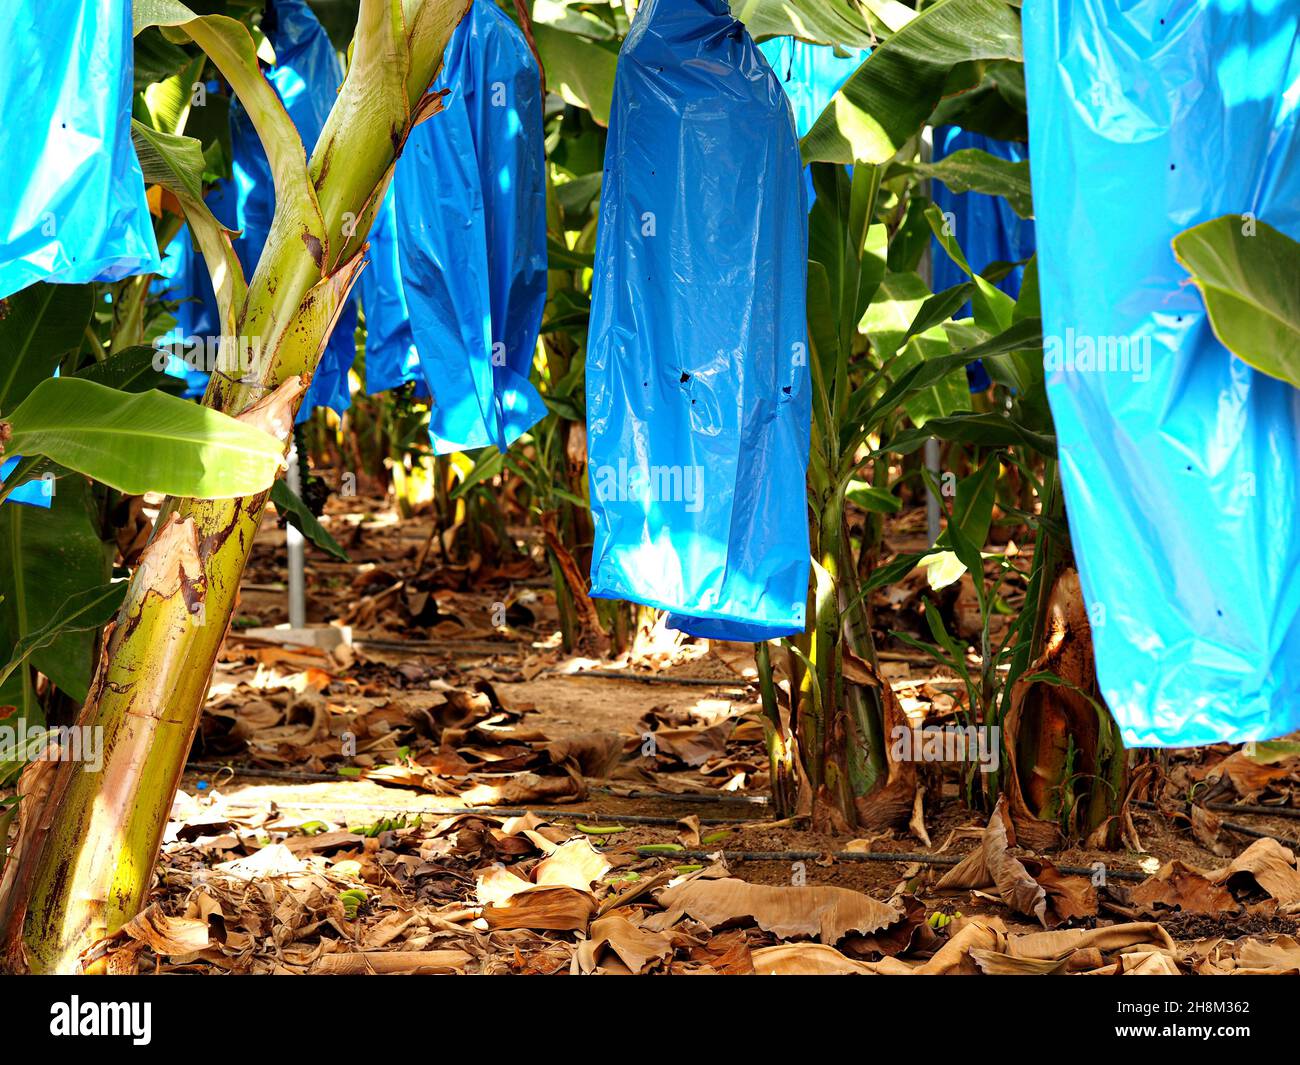 Bananas ripen in plastic bags at the Israel Banana Plantation. Stock Photo